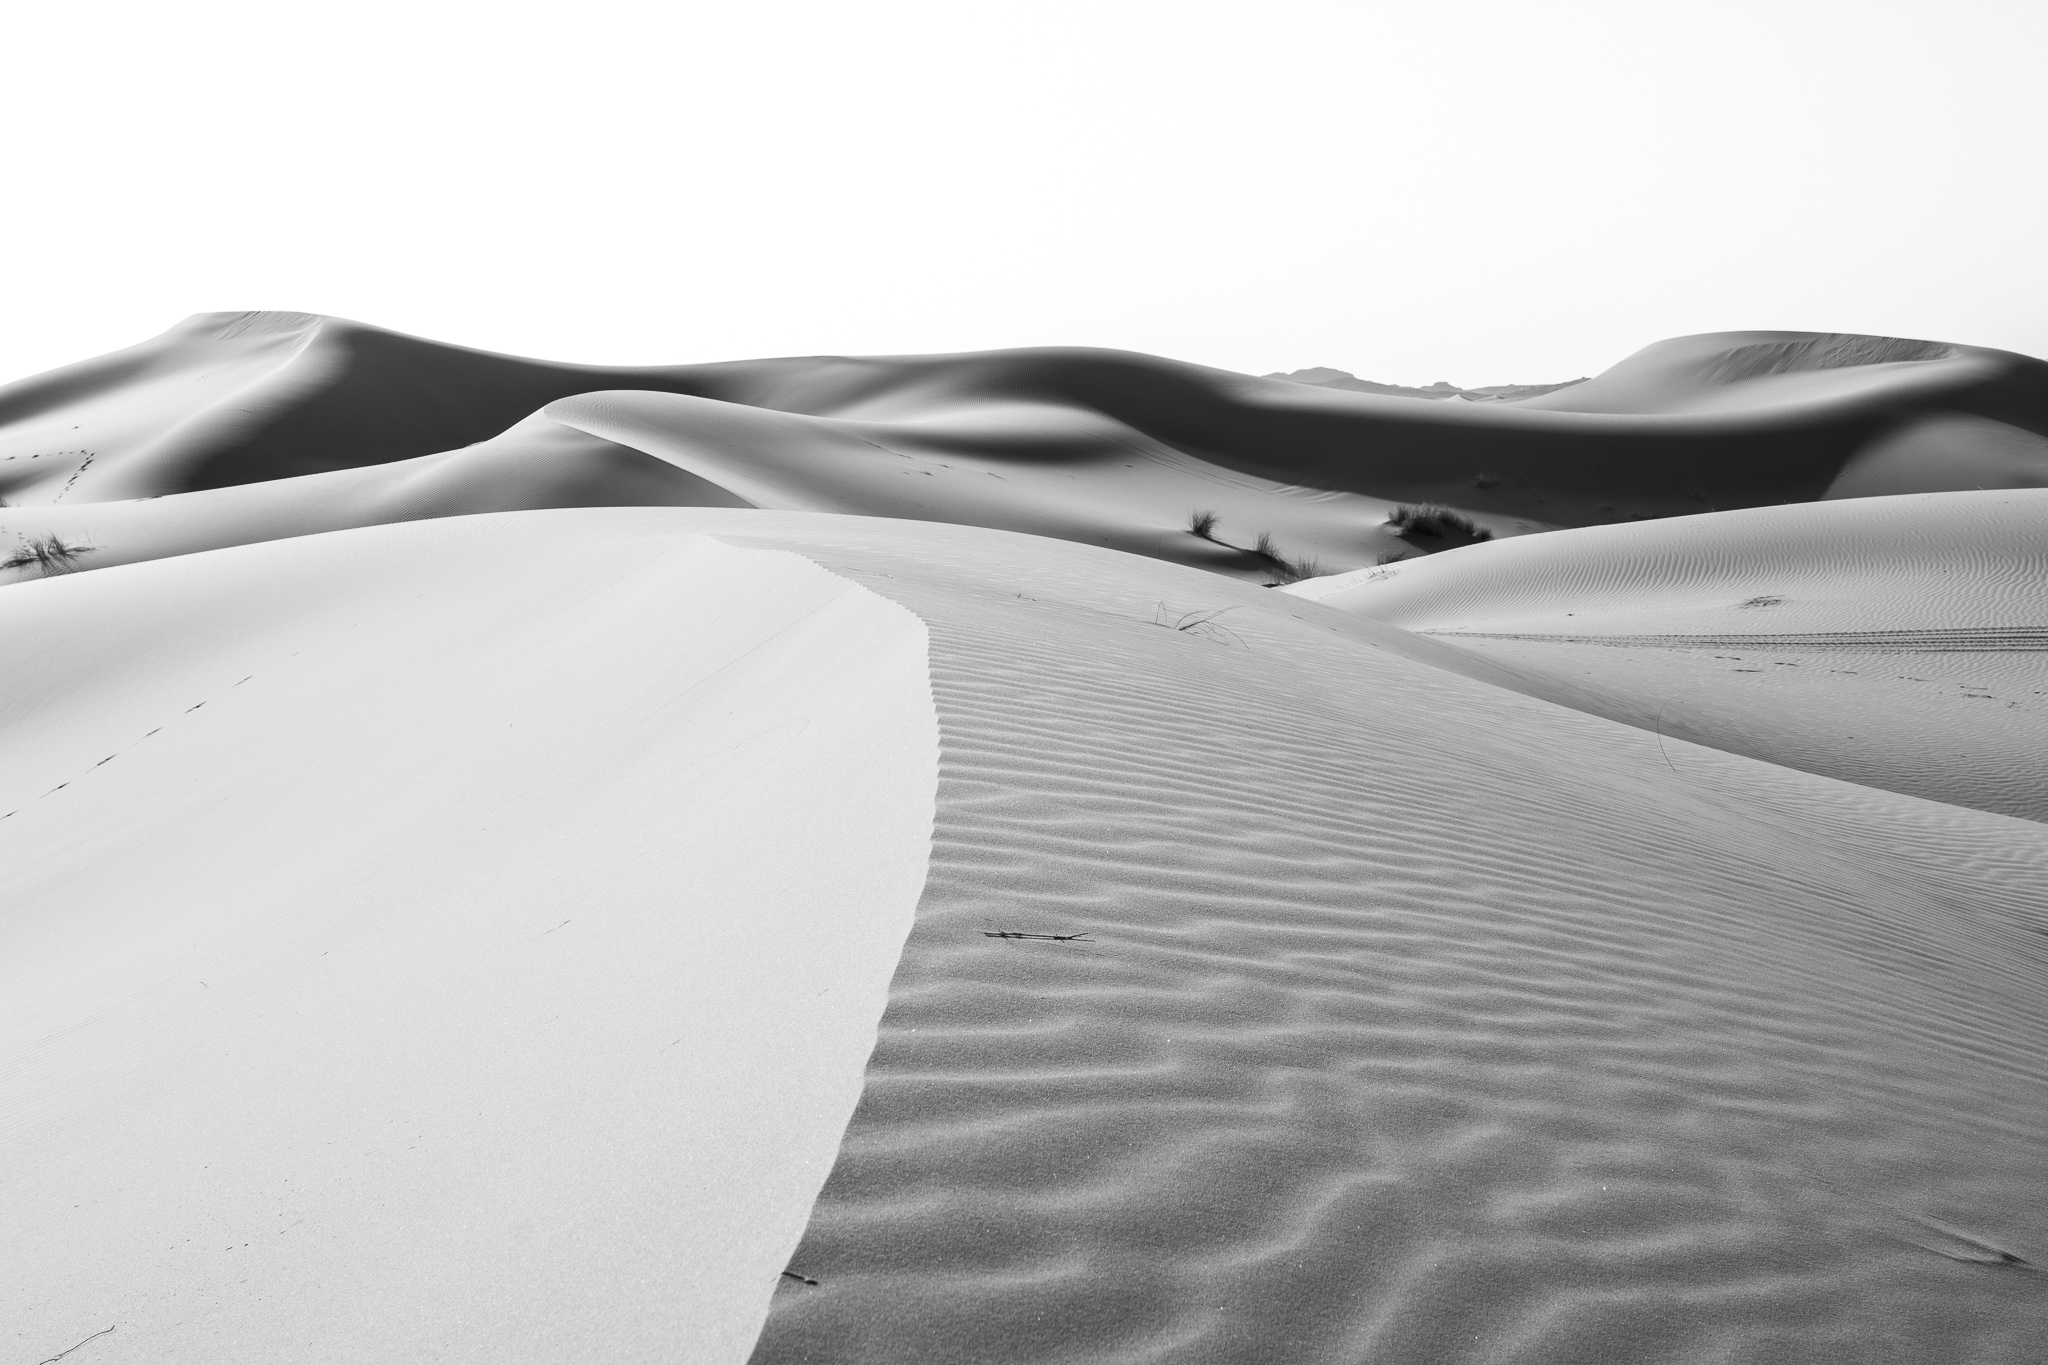 Cercano a la ciudad de Erfoud, al sudeste de Marruecos y próximo a la frontera con Argelia, se encuentra el llamado Erg Chebbi. <br>El conjunto dunar, de 22km de largo y 5 de ancho, se extiende a lo largo del Sáhara con una altura de hasta 150m en algunos lugares.